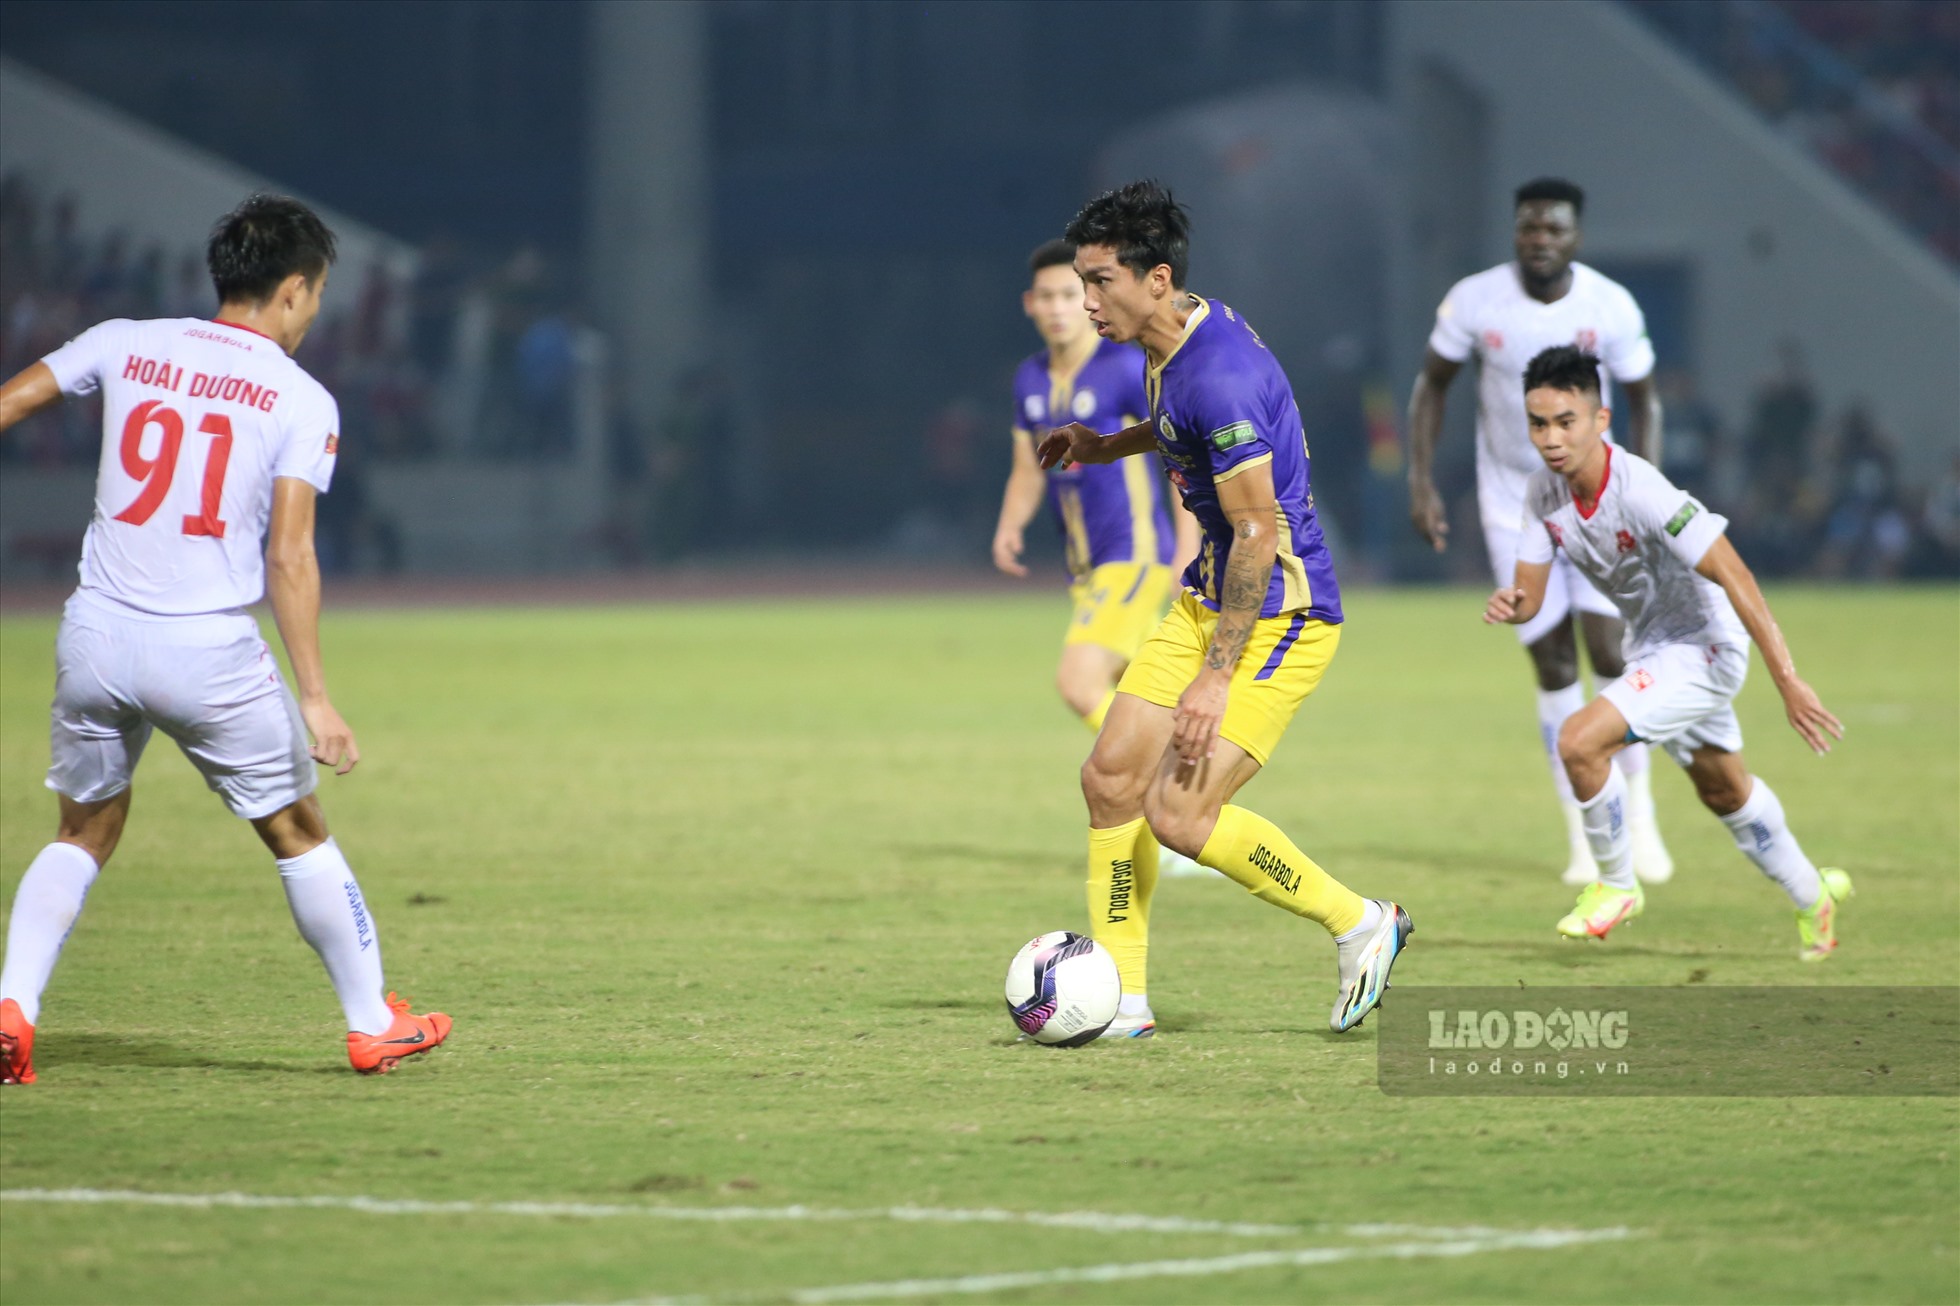 Sau 90 phút thi đấu, Hà Nội FC để thua Hải Phòng với tỷ số 2-3. Trận thua này khiến đội bóng Thủ đô chỉ còn cách chính đối thủ 2 điểm nhưng thi đấu ít hơn 1 trận.